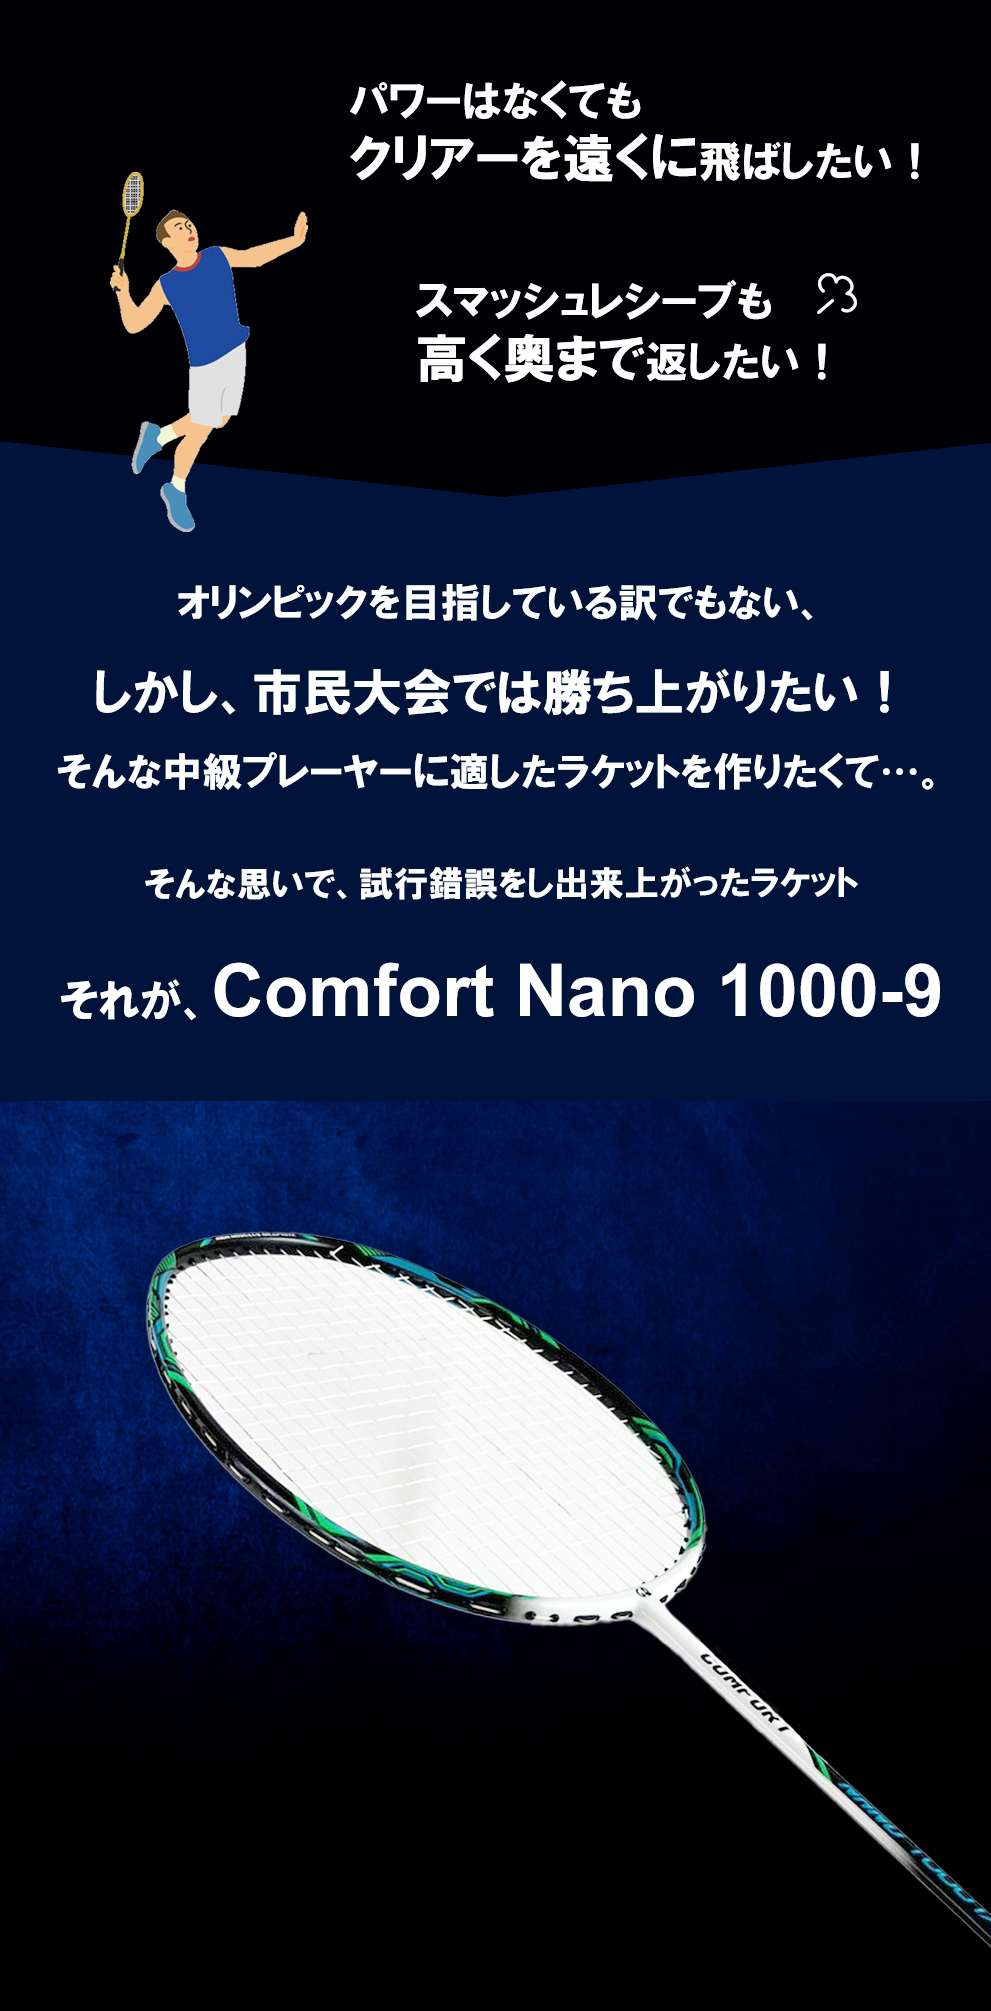 パワーはなくてもクリアーを遠くに飛ばしたい！スマッシュレシーブも高く奥まで返したい！市民大会では勝ち上がりたい！
技術やパワーを補ってくれる...そんな都合のいいラケットがあれば...そんな思いで、試行錯誤をし出来上がったラケットそれが、Comfort Nano 1000-9
そんなあなたに最適です。Comfort Nano 1000-9 ここがすごい！販売実績NO.1 トータル販売本数13,200本突破
